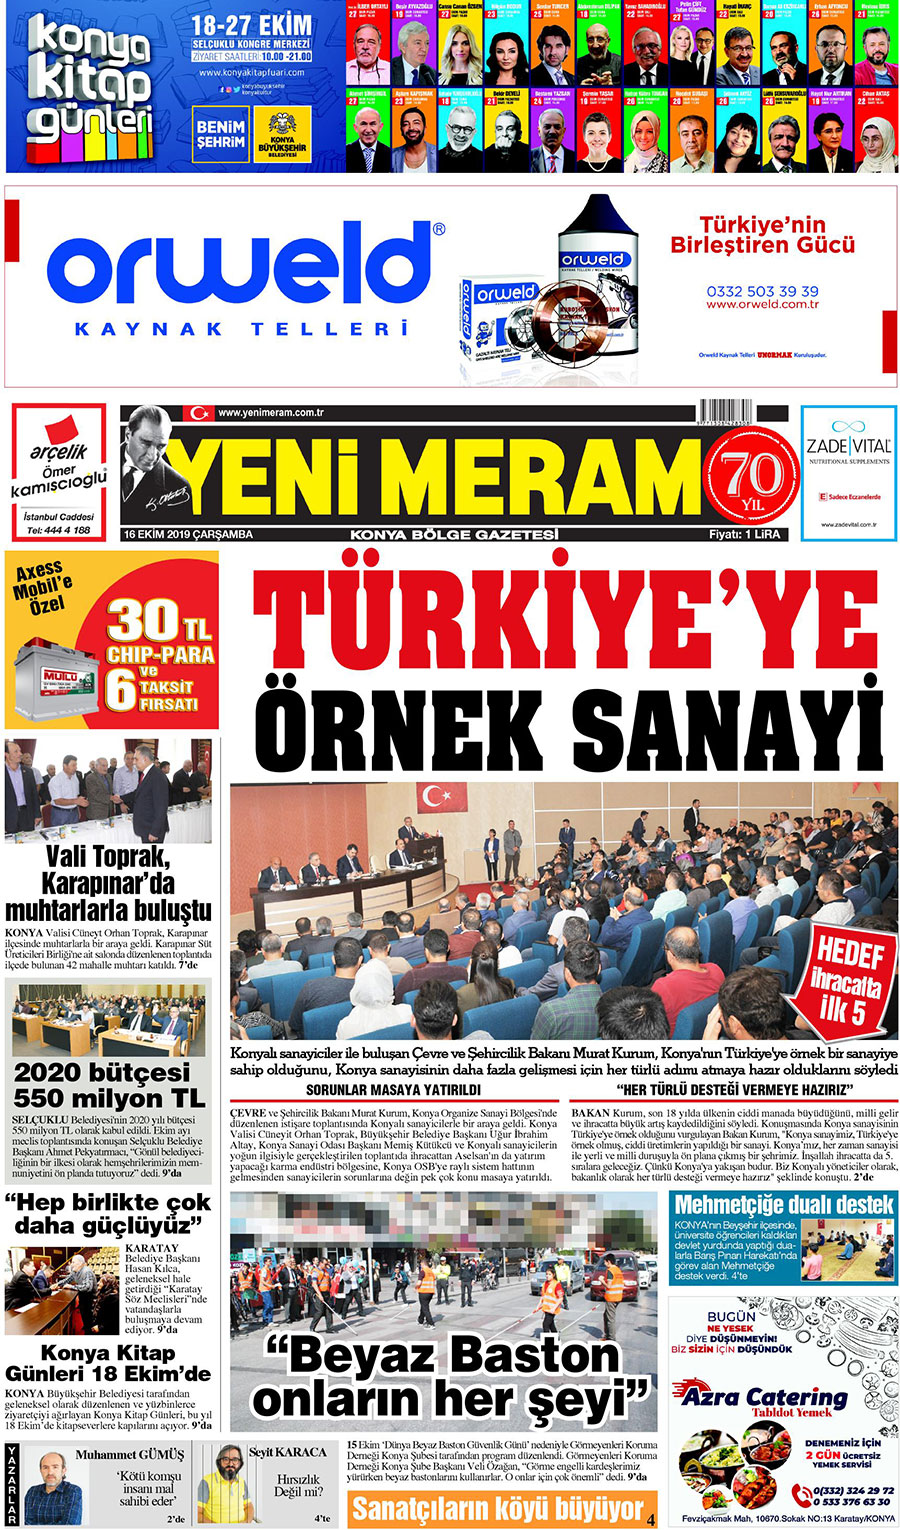 16 Ekim 2019 Yeni Meram Gazetesi